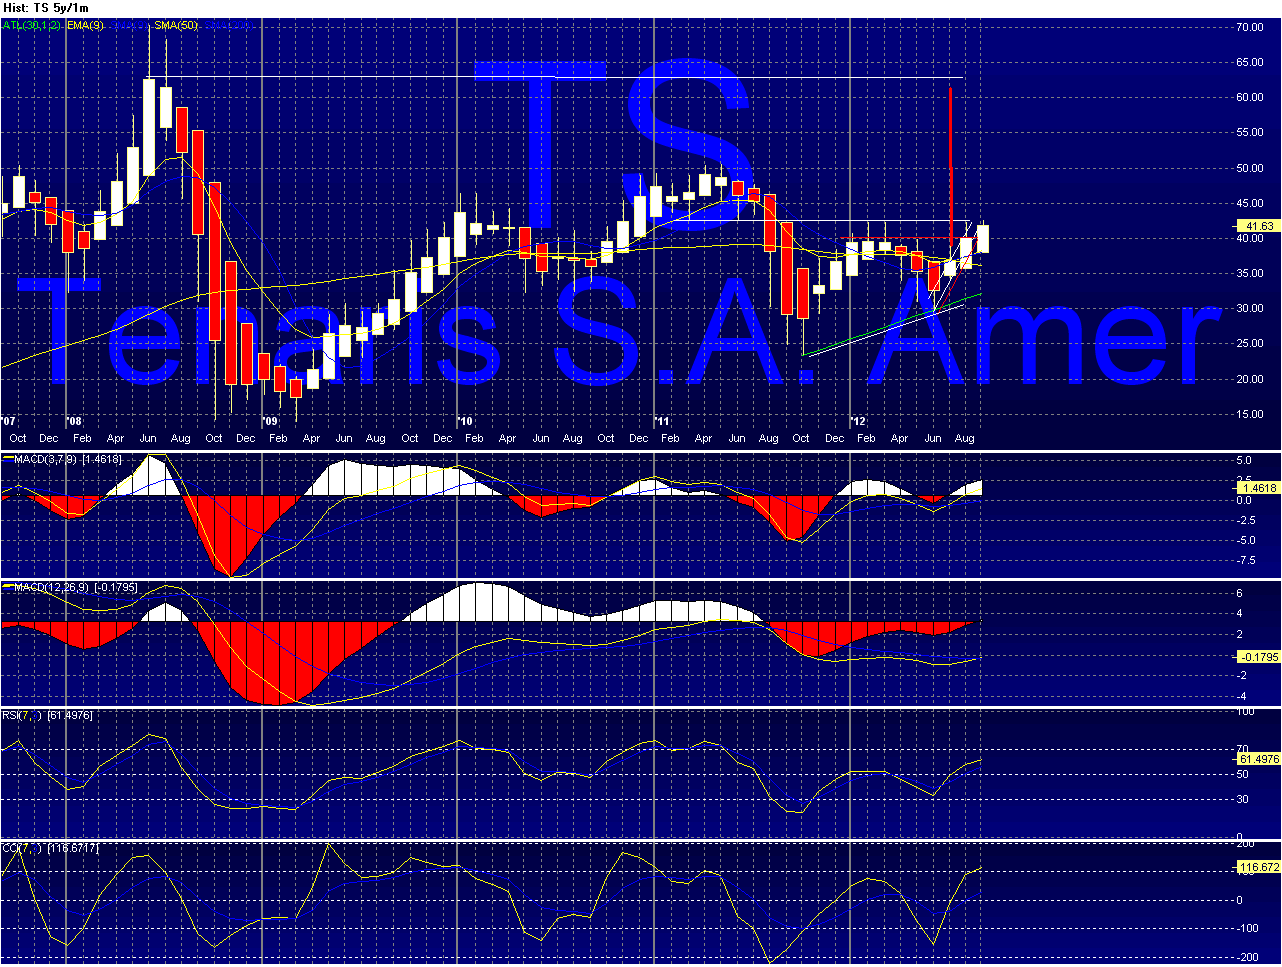 TS - Tenaris Chart_18